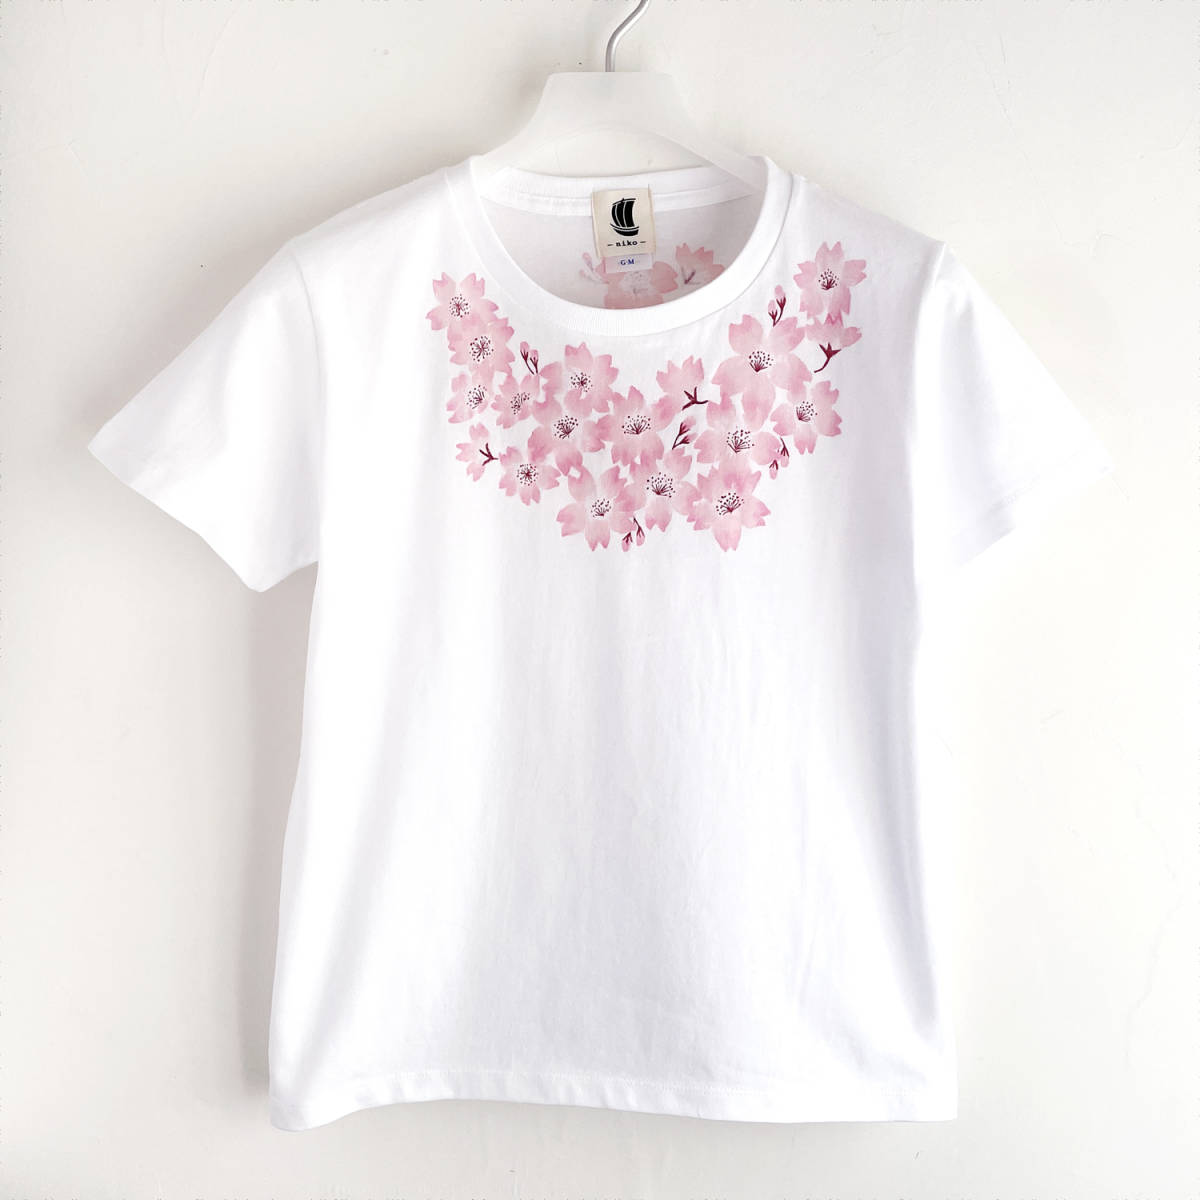 Damen-T-Shirt, Größe M, Weiß, T-Shirt mit Blumenprint und Kirschblüten-Print, handbemaltes T-Shirt, Mittlere Größe, Rundhals, Gemustert